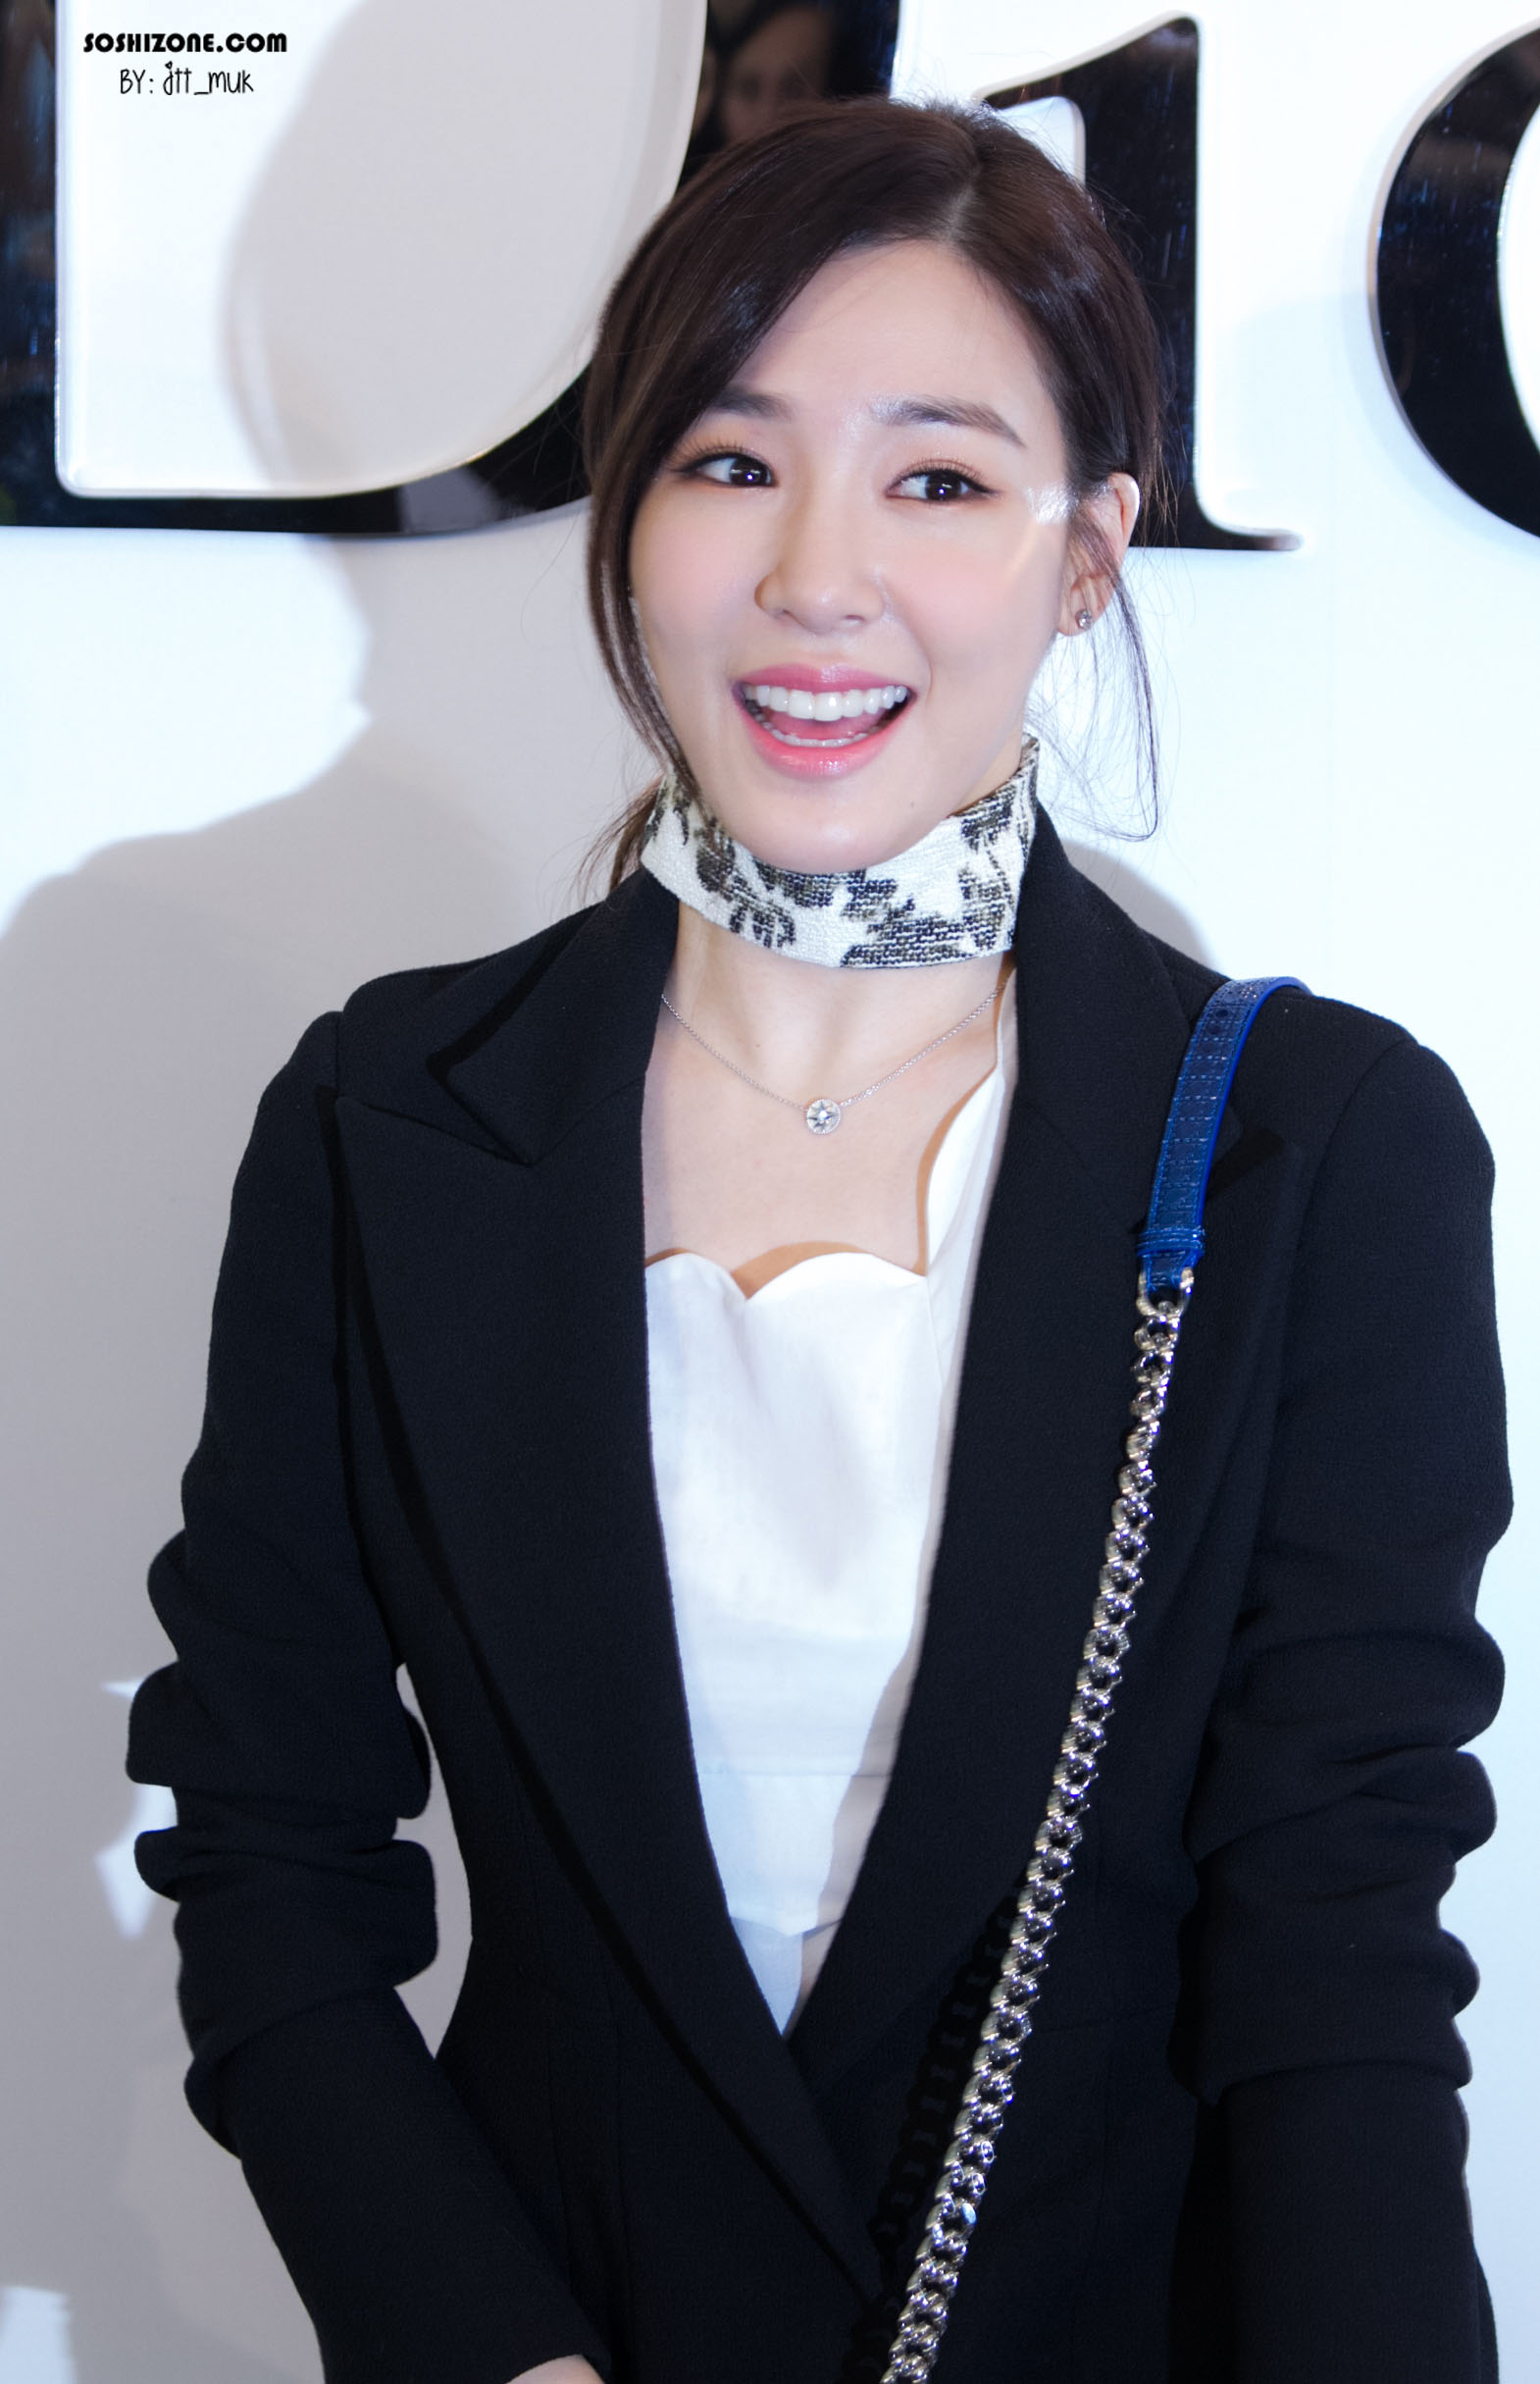 [PIC][17-02-2016]Tiffany khởi hành đi Thái Lan để tham dự sự kiện khai trương chi nhánh của thương hiệu "Christian Dior" vào hôm nay - Page 14 26761E355728D45D0C8D04